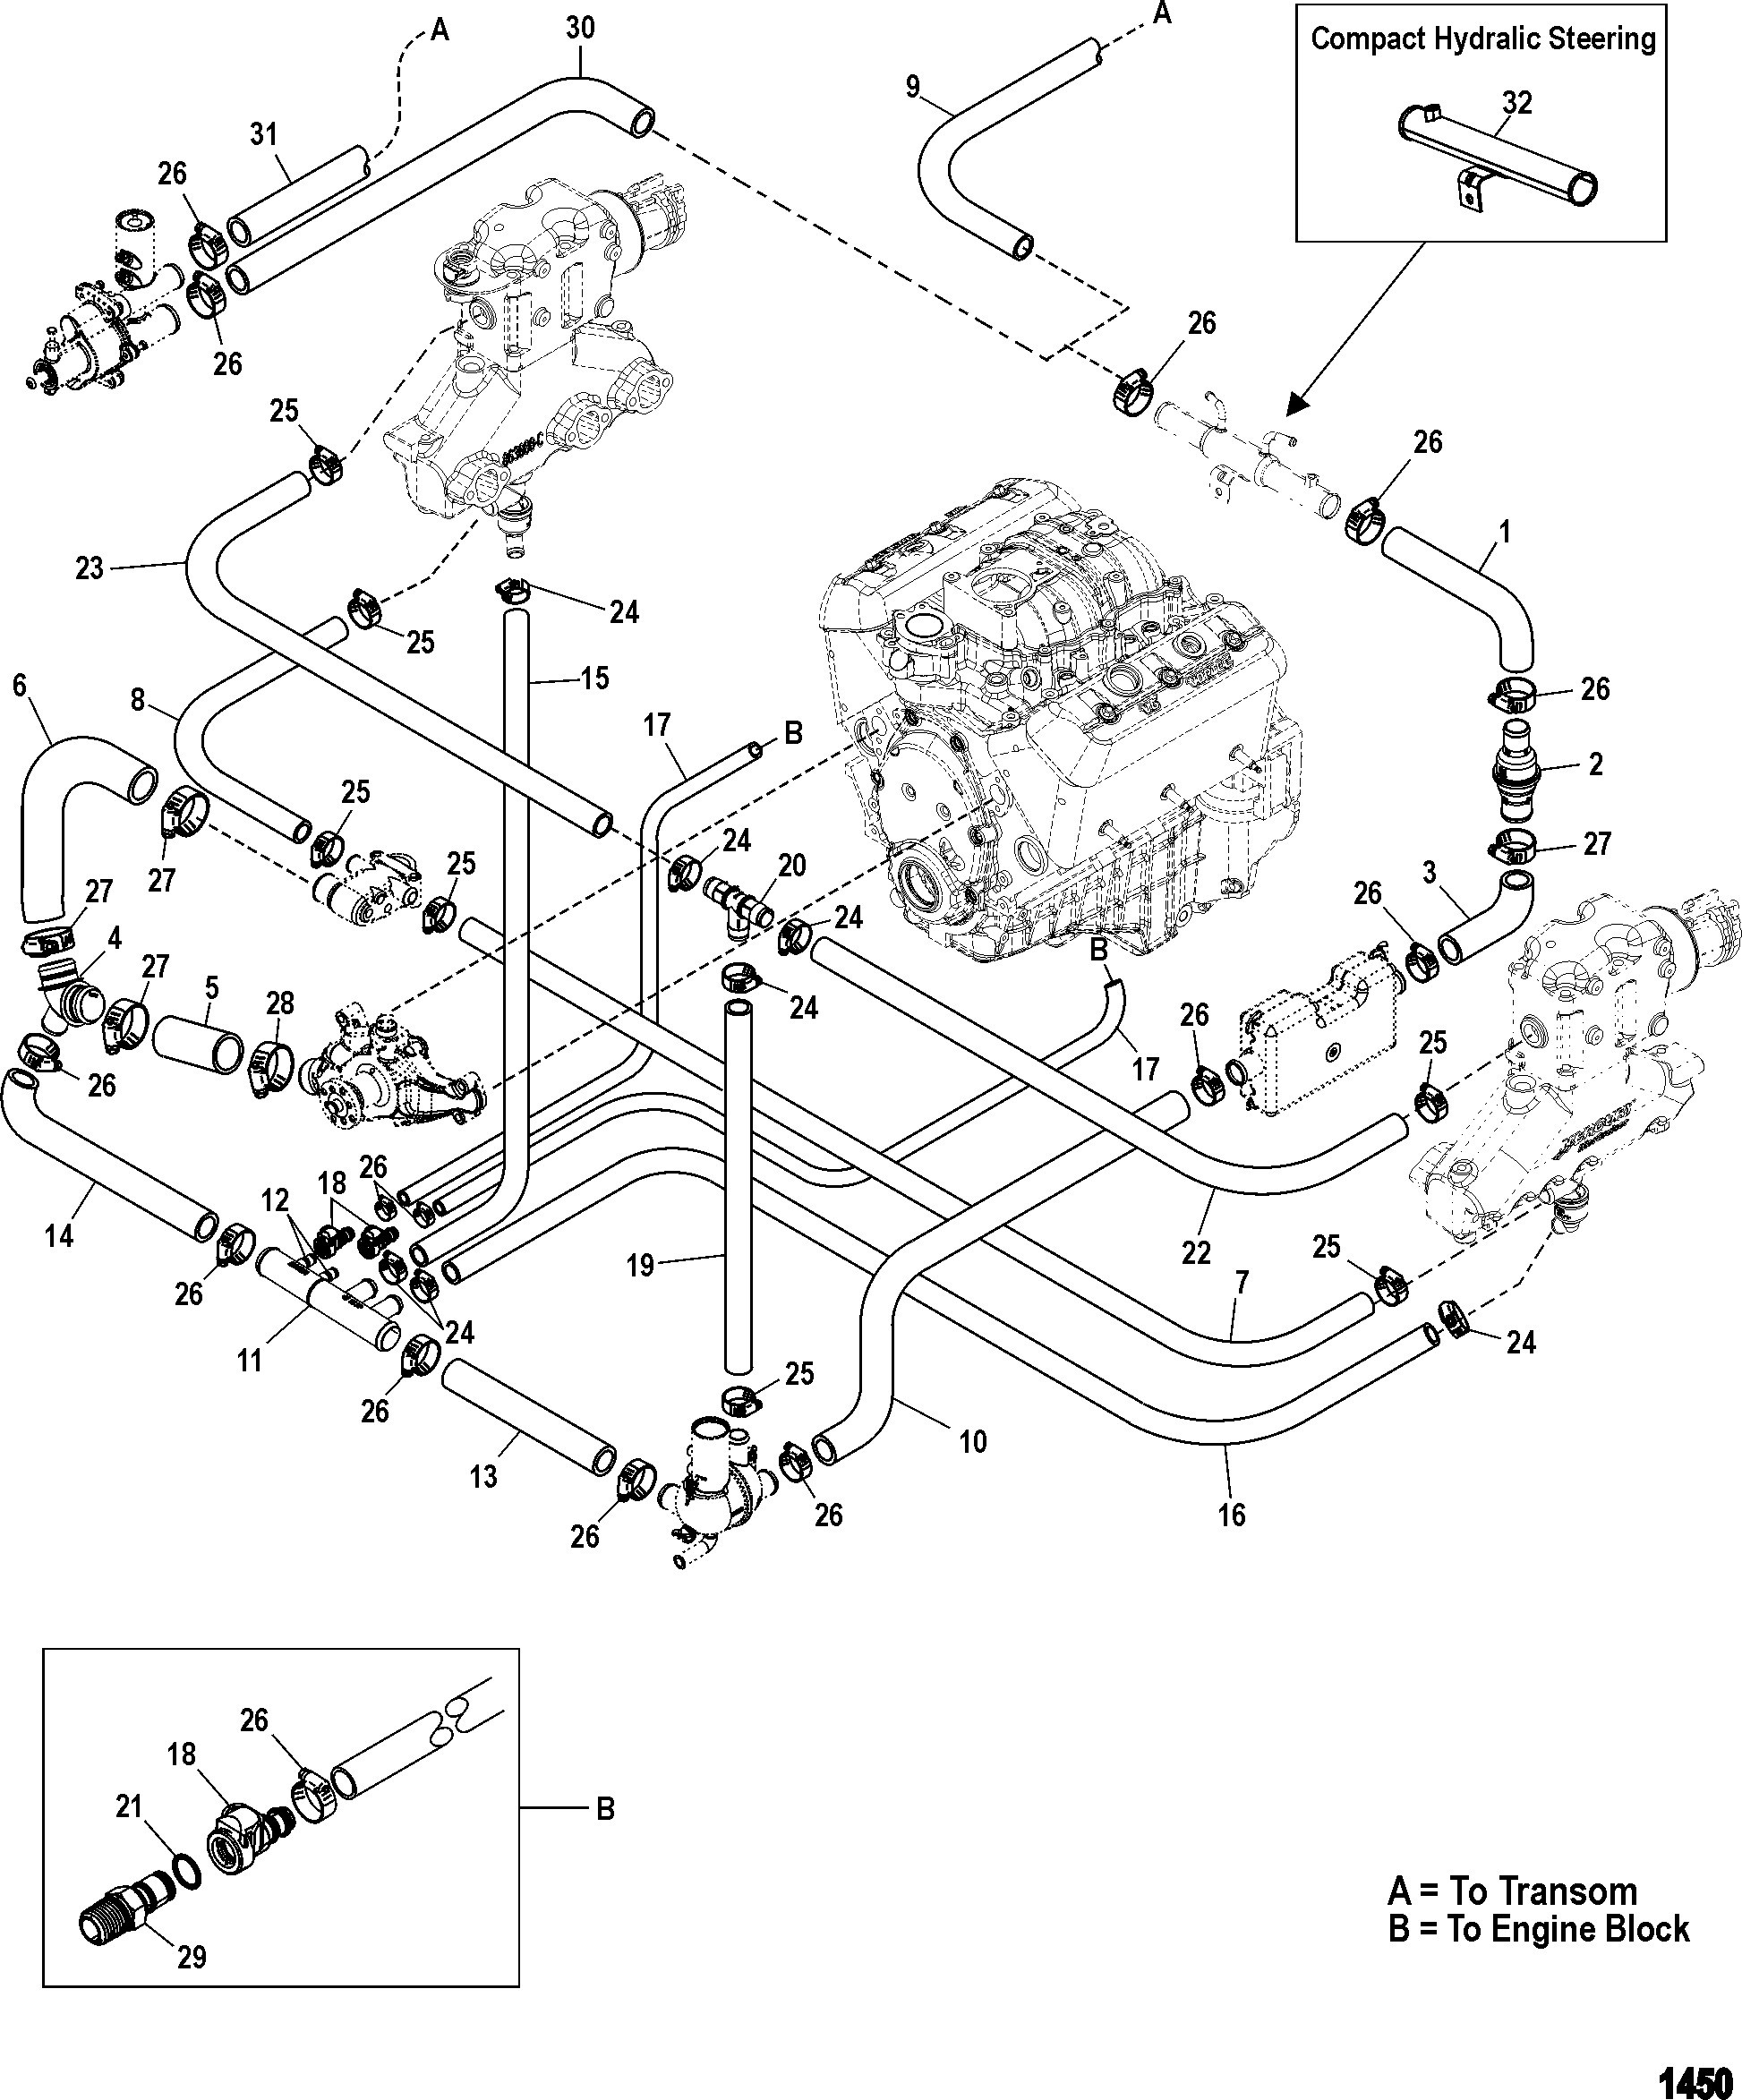 4 3 Vortec Spark Plug Wiring Diagram | Wiring Library - Spark Plug Wiring Diagram Chevy 4.3 V6